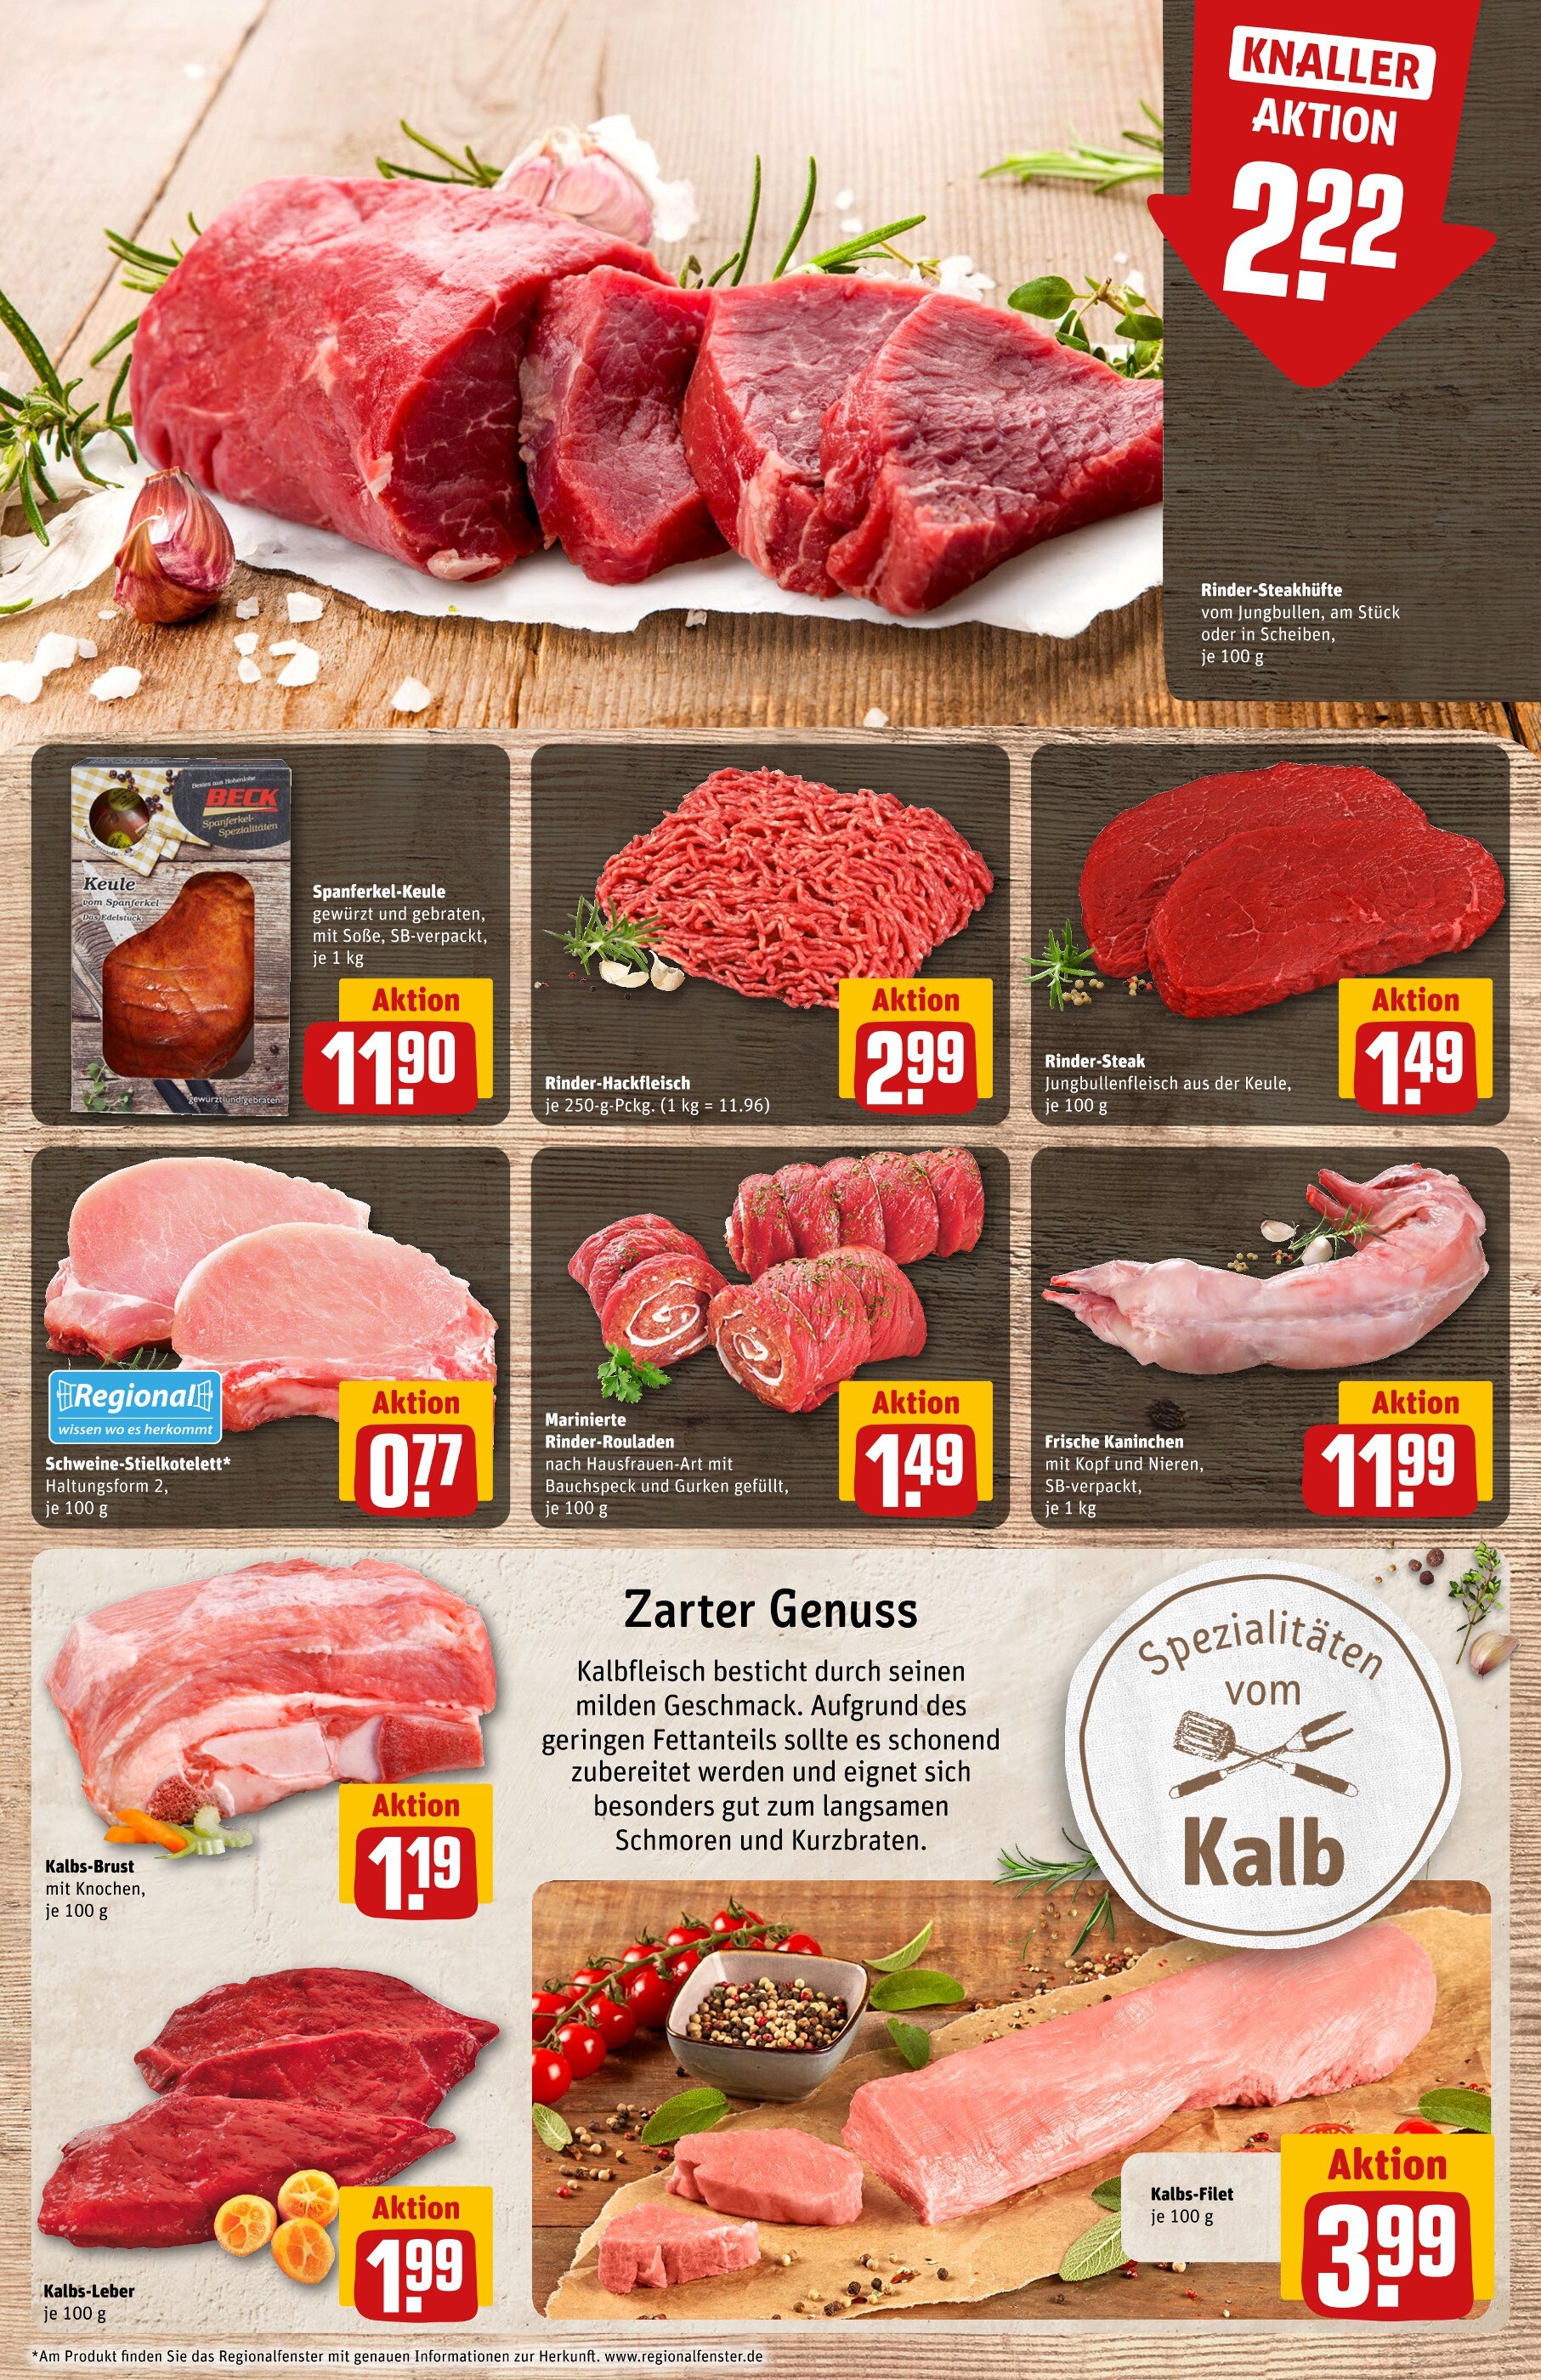 Steak kaufen in Hildesheim - günstige Angebote in Hildesheim